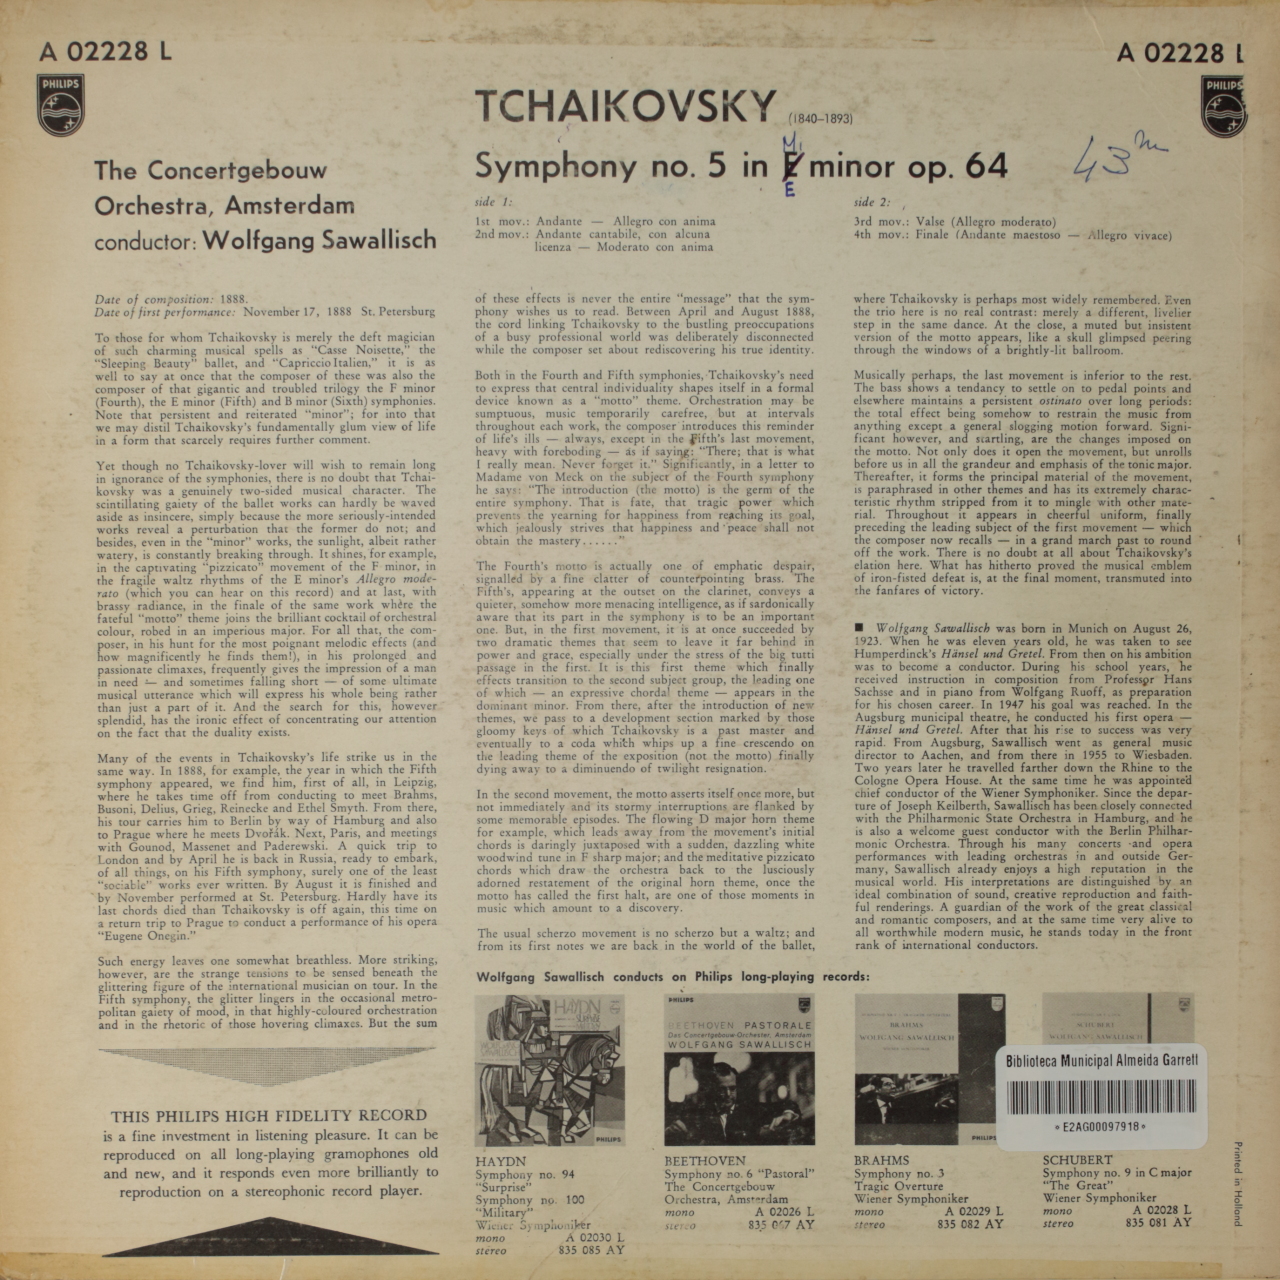 Tchaikovsky: Symphony Nº 5